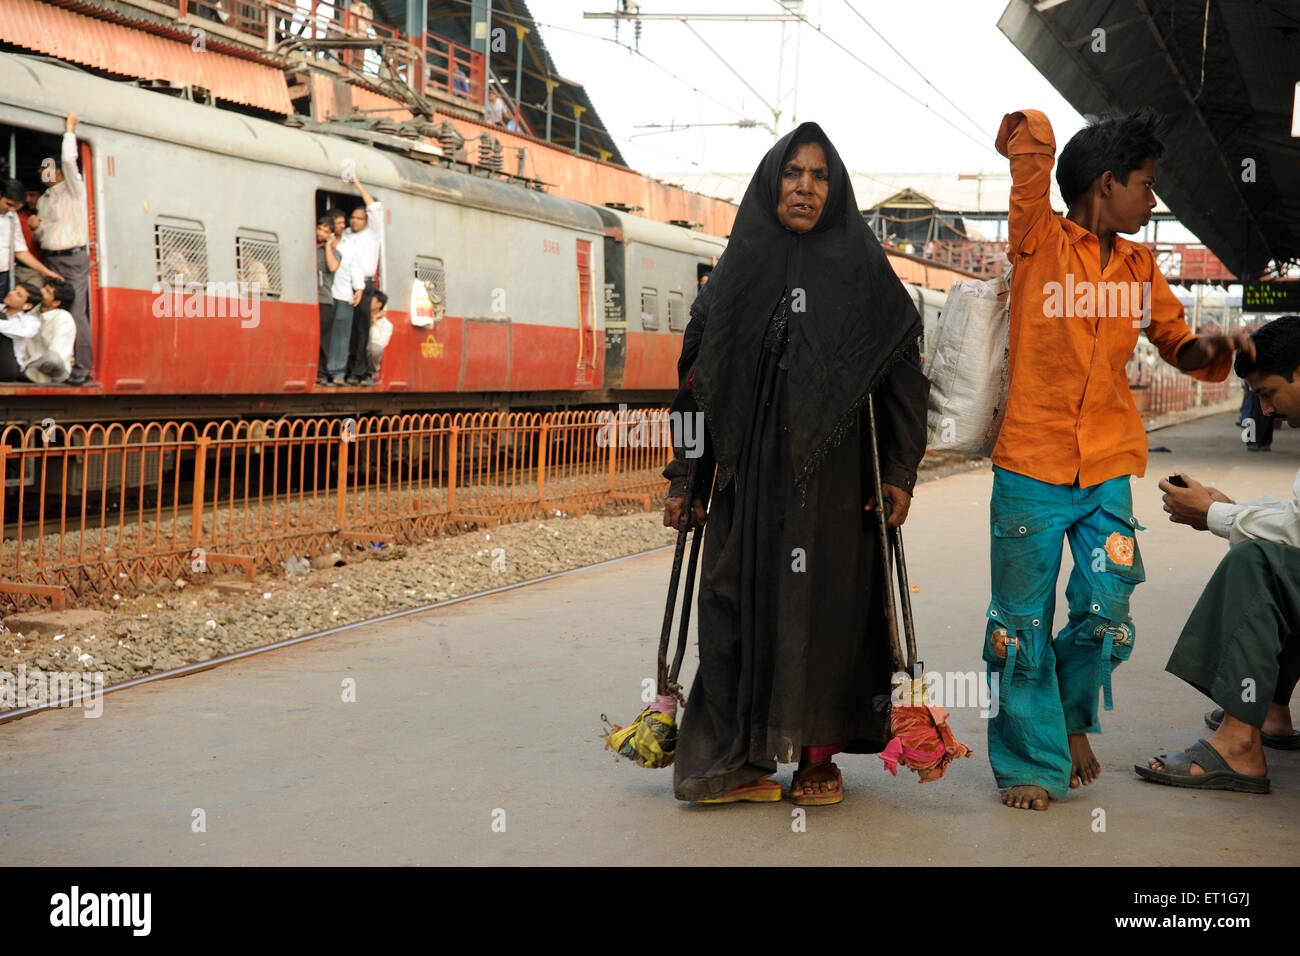 Personne handicapée, femme musulmane handicapée avec béquilles sur la plate-forme ferroviaire, Bombay, Mumbai, Maharashtra, Inde Banque D'Images